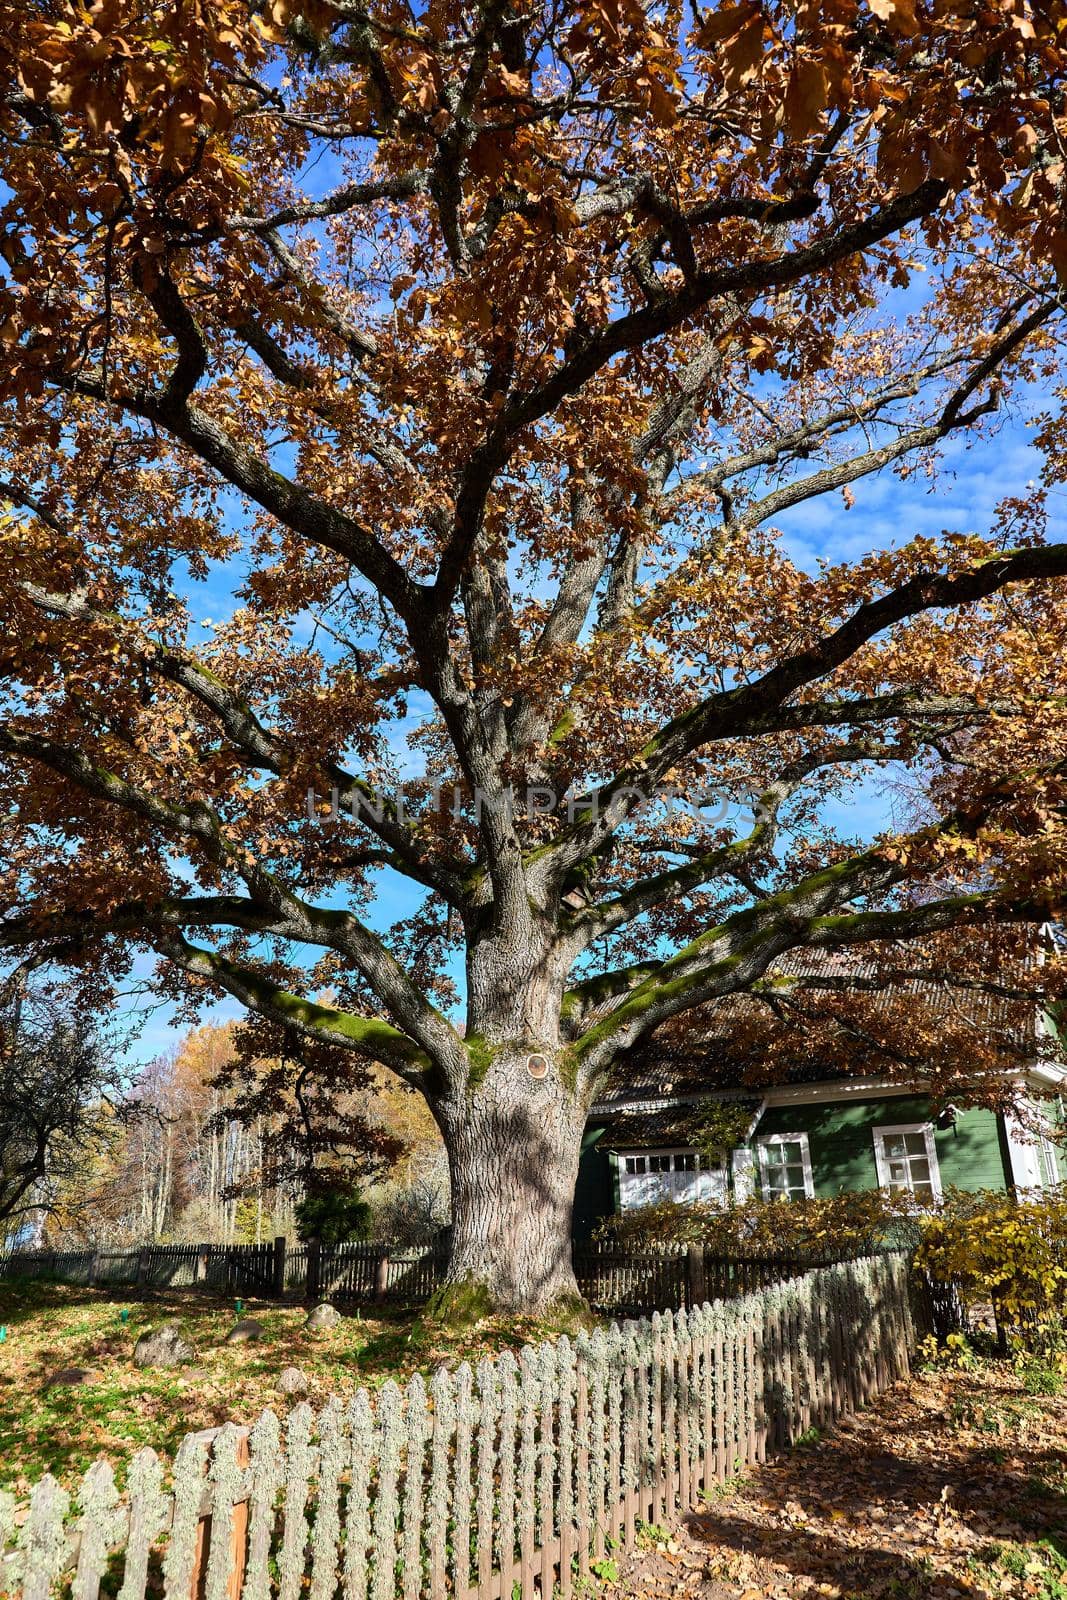 Huge oak tree in sunbeams. High quality by diczman